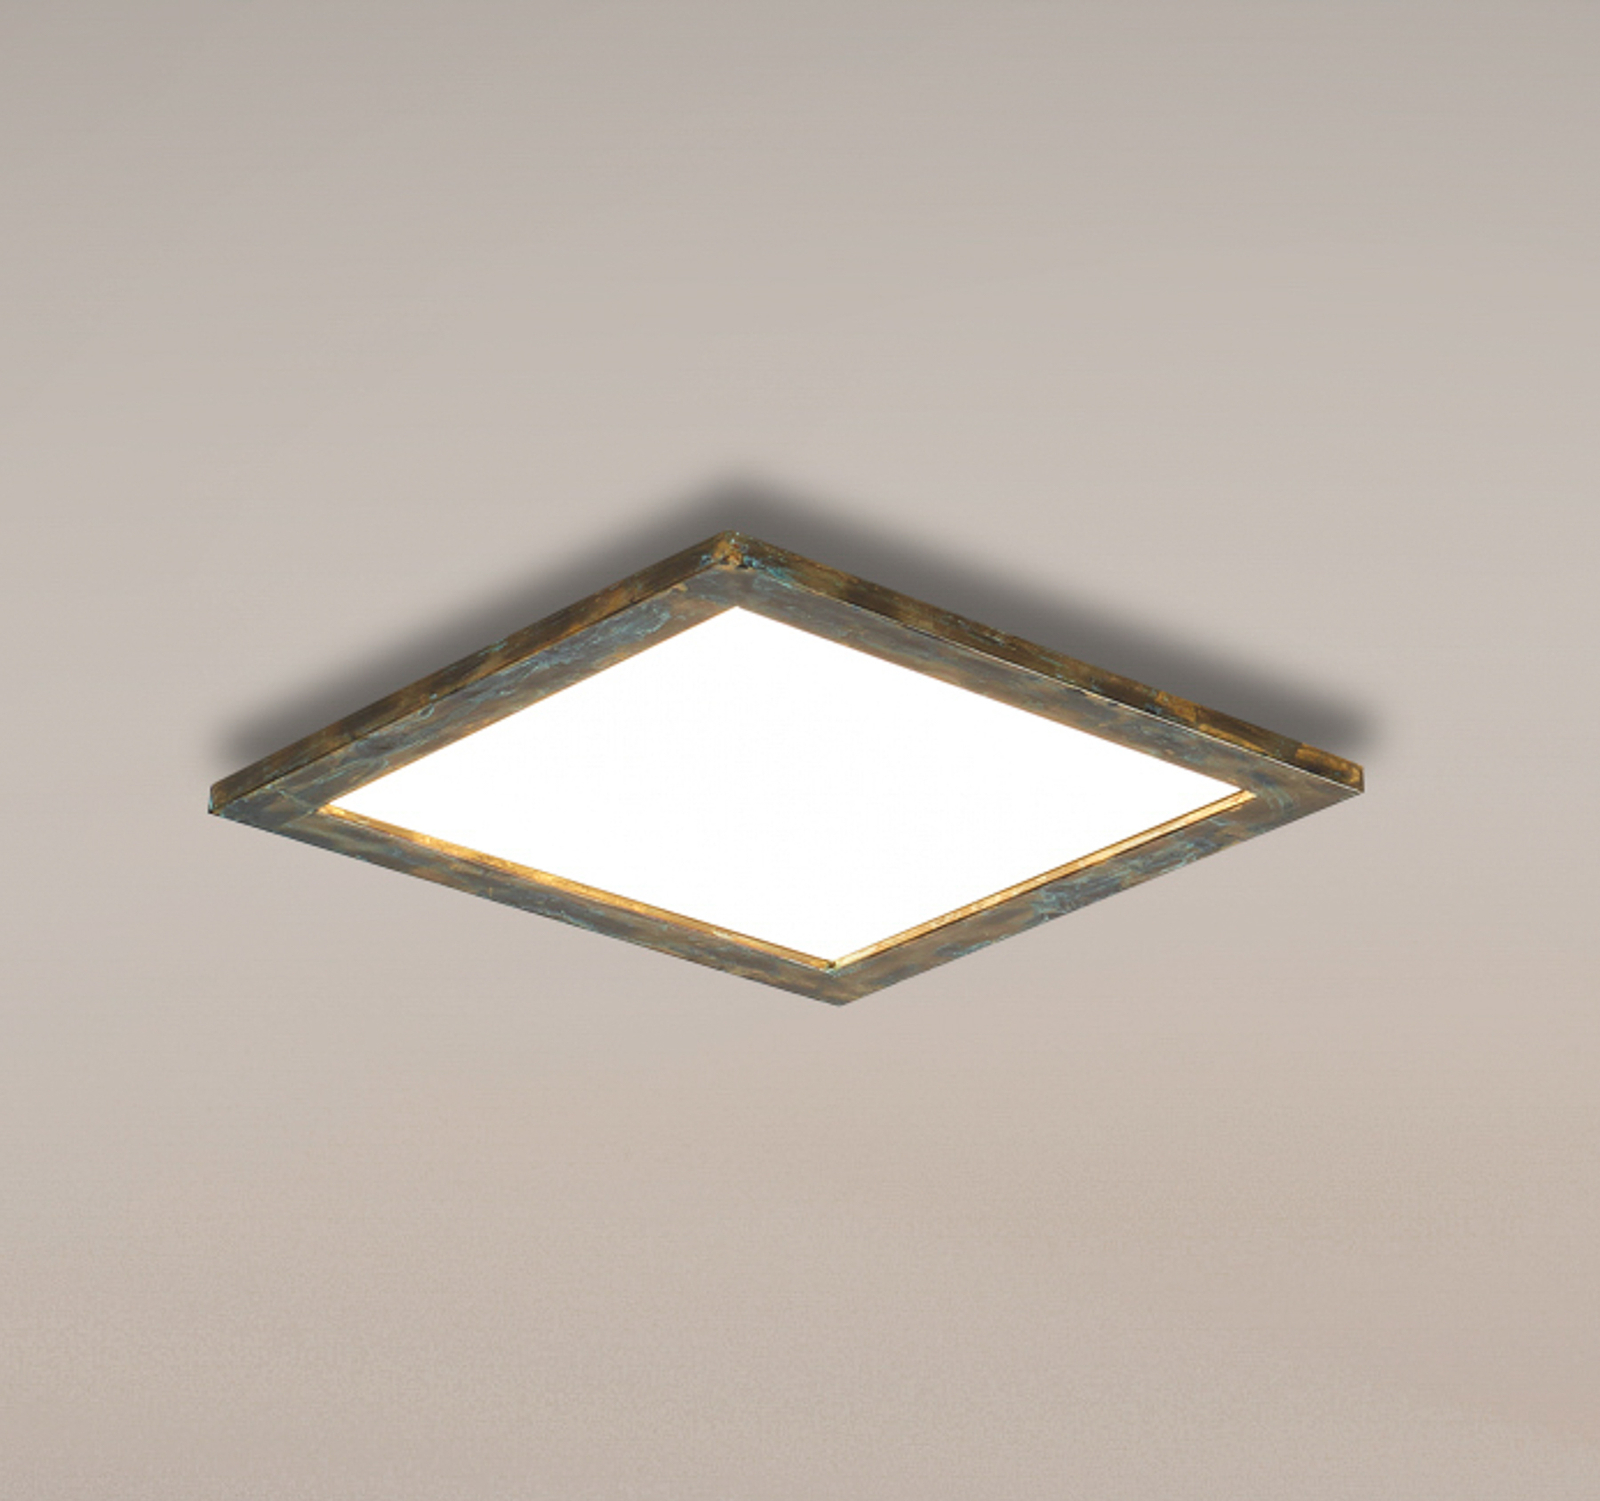 Quitani Aurinor LED paneel, goudkleurig gepatineerd, 45 cm